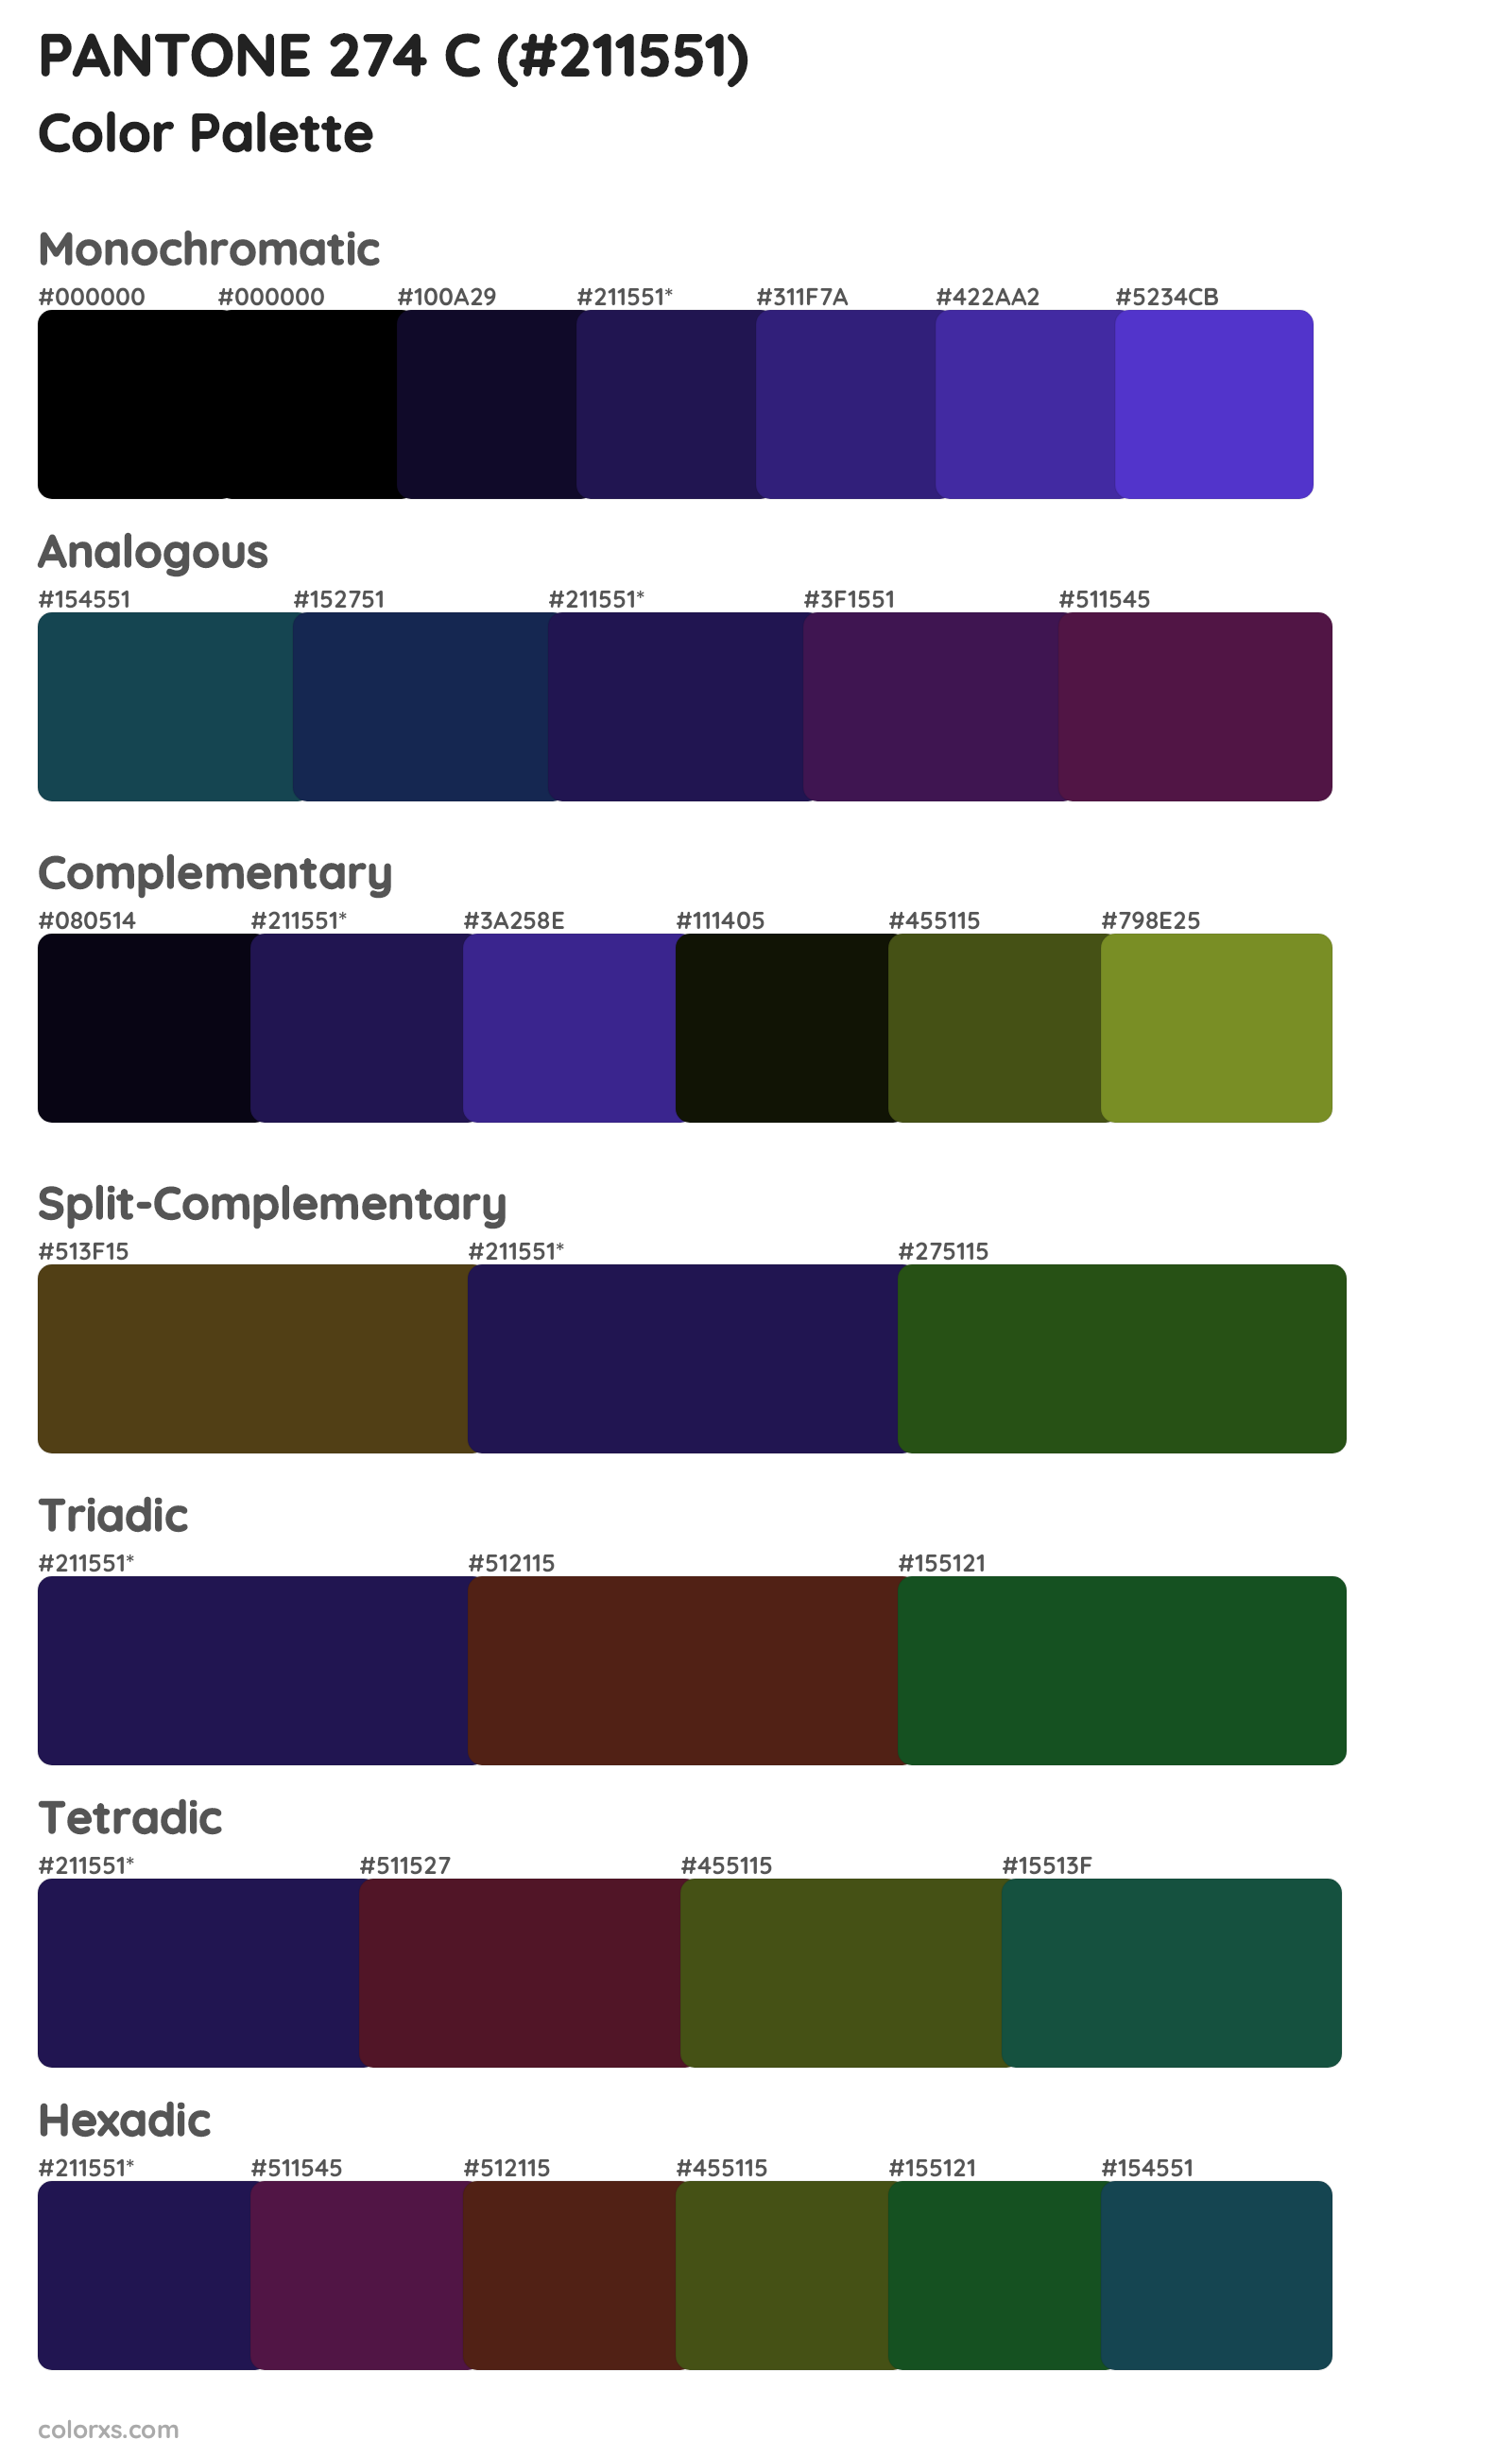 PANTONE 274 C Color Scheme Palettes